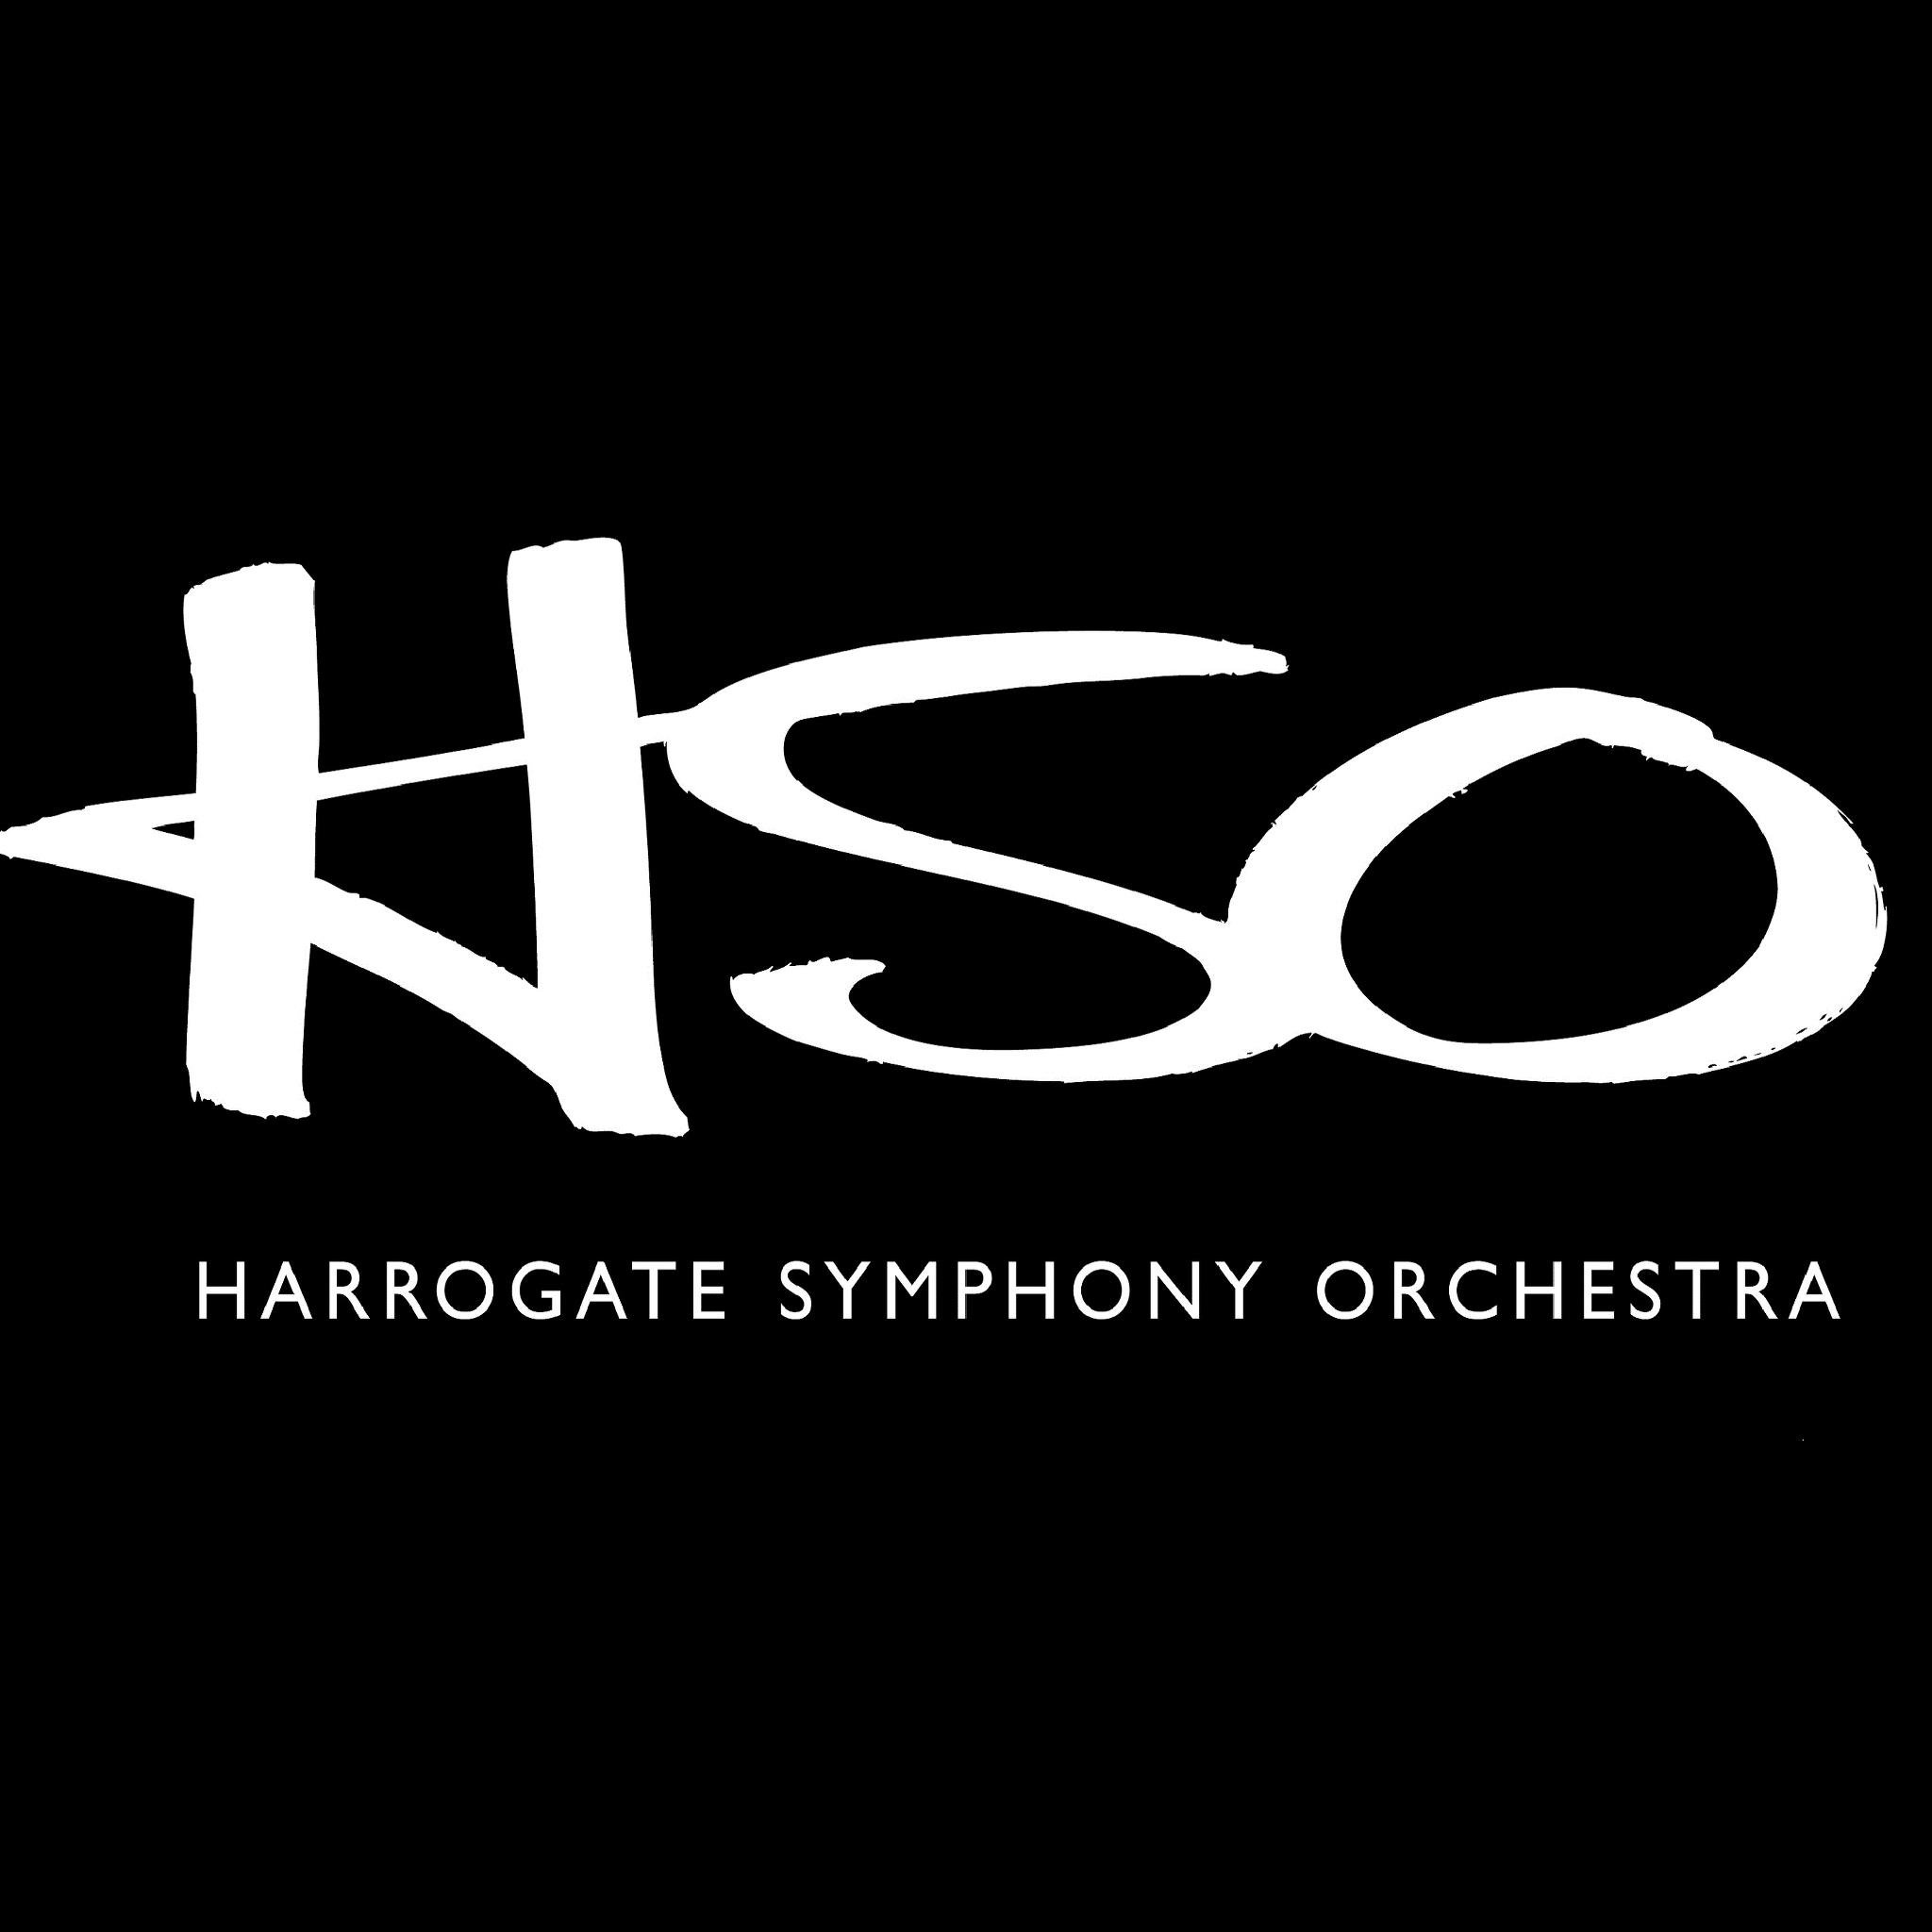 Harrogate Symphony Orchestra